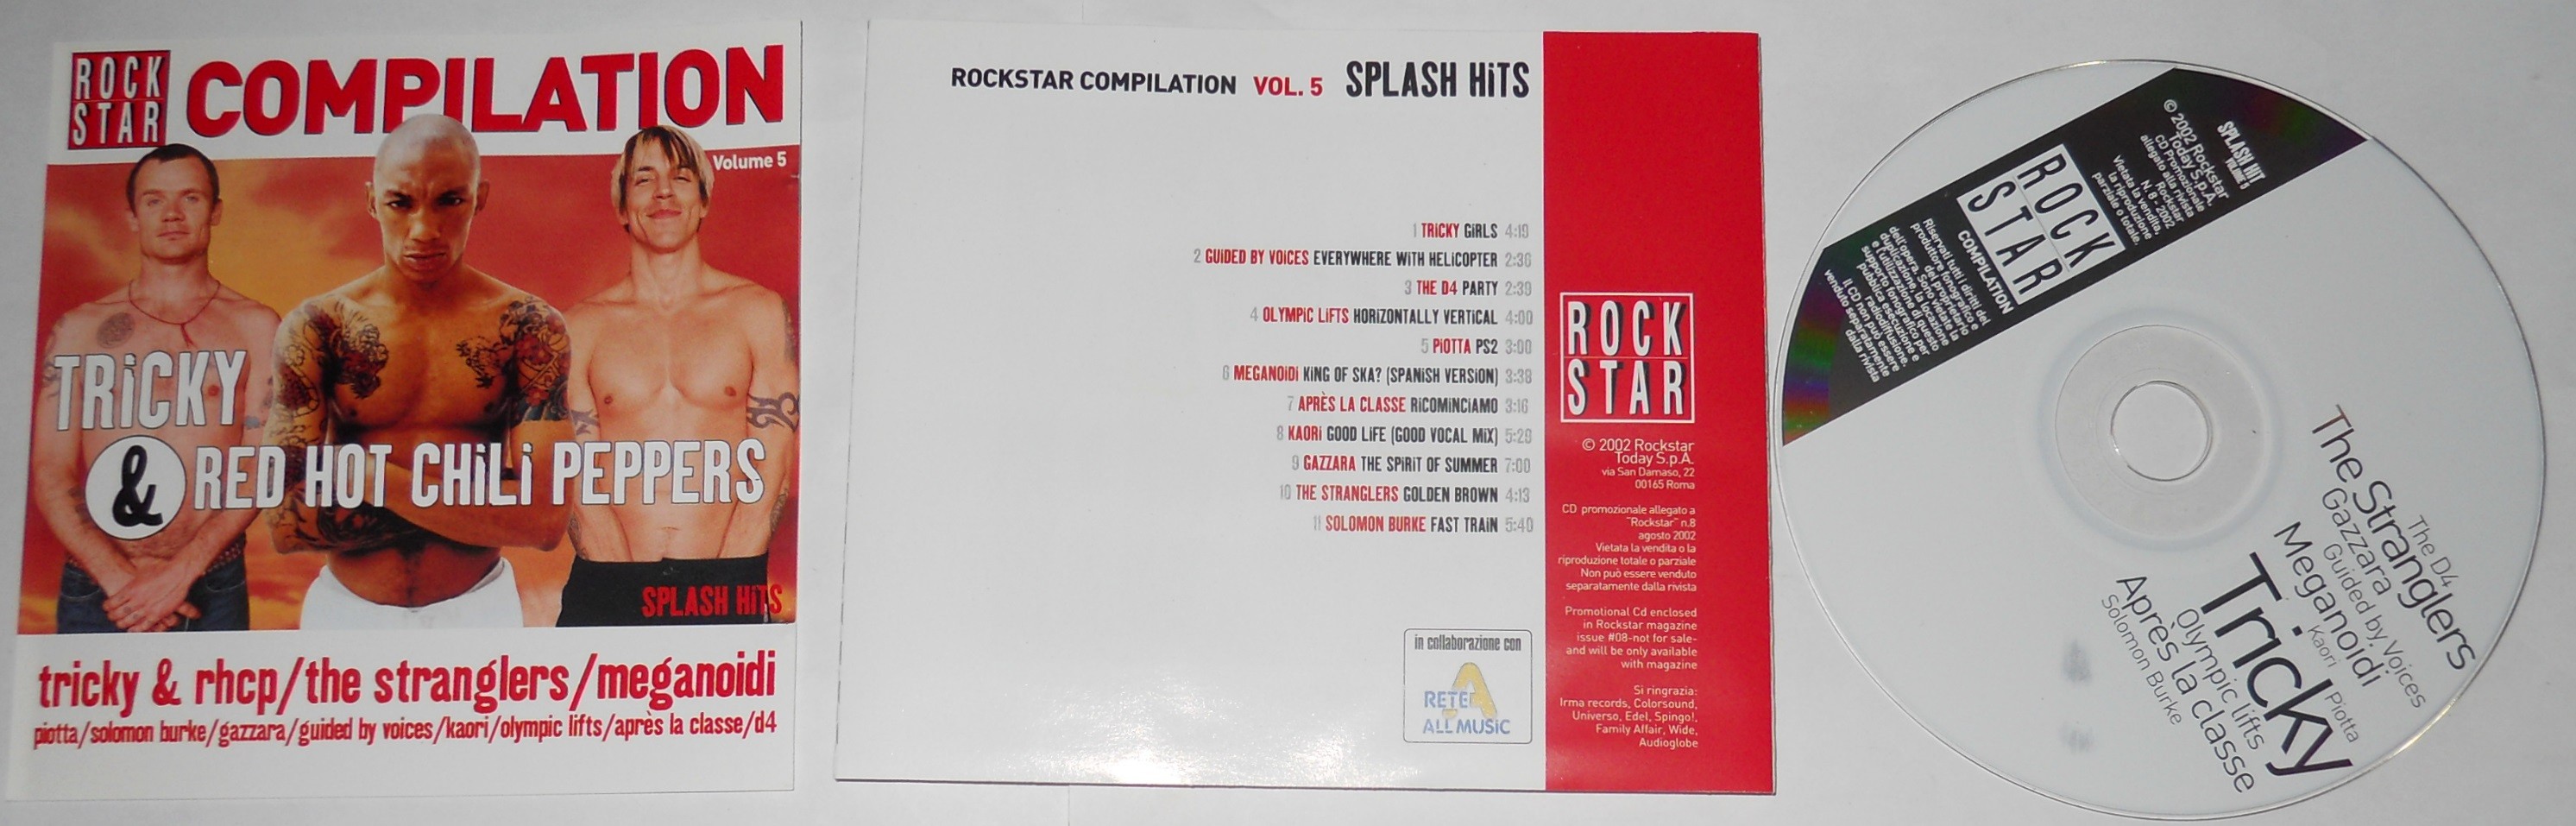 rockstar compilation